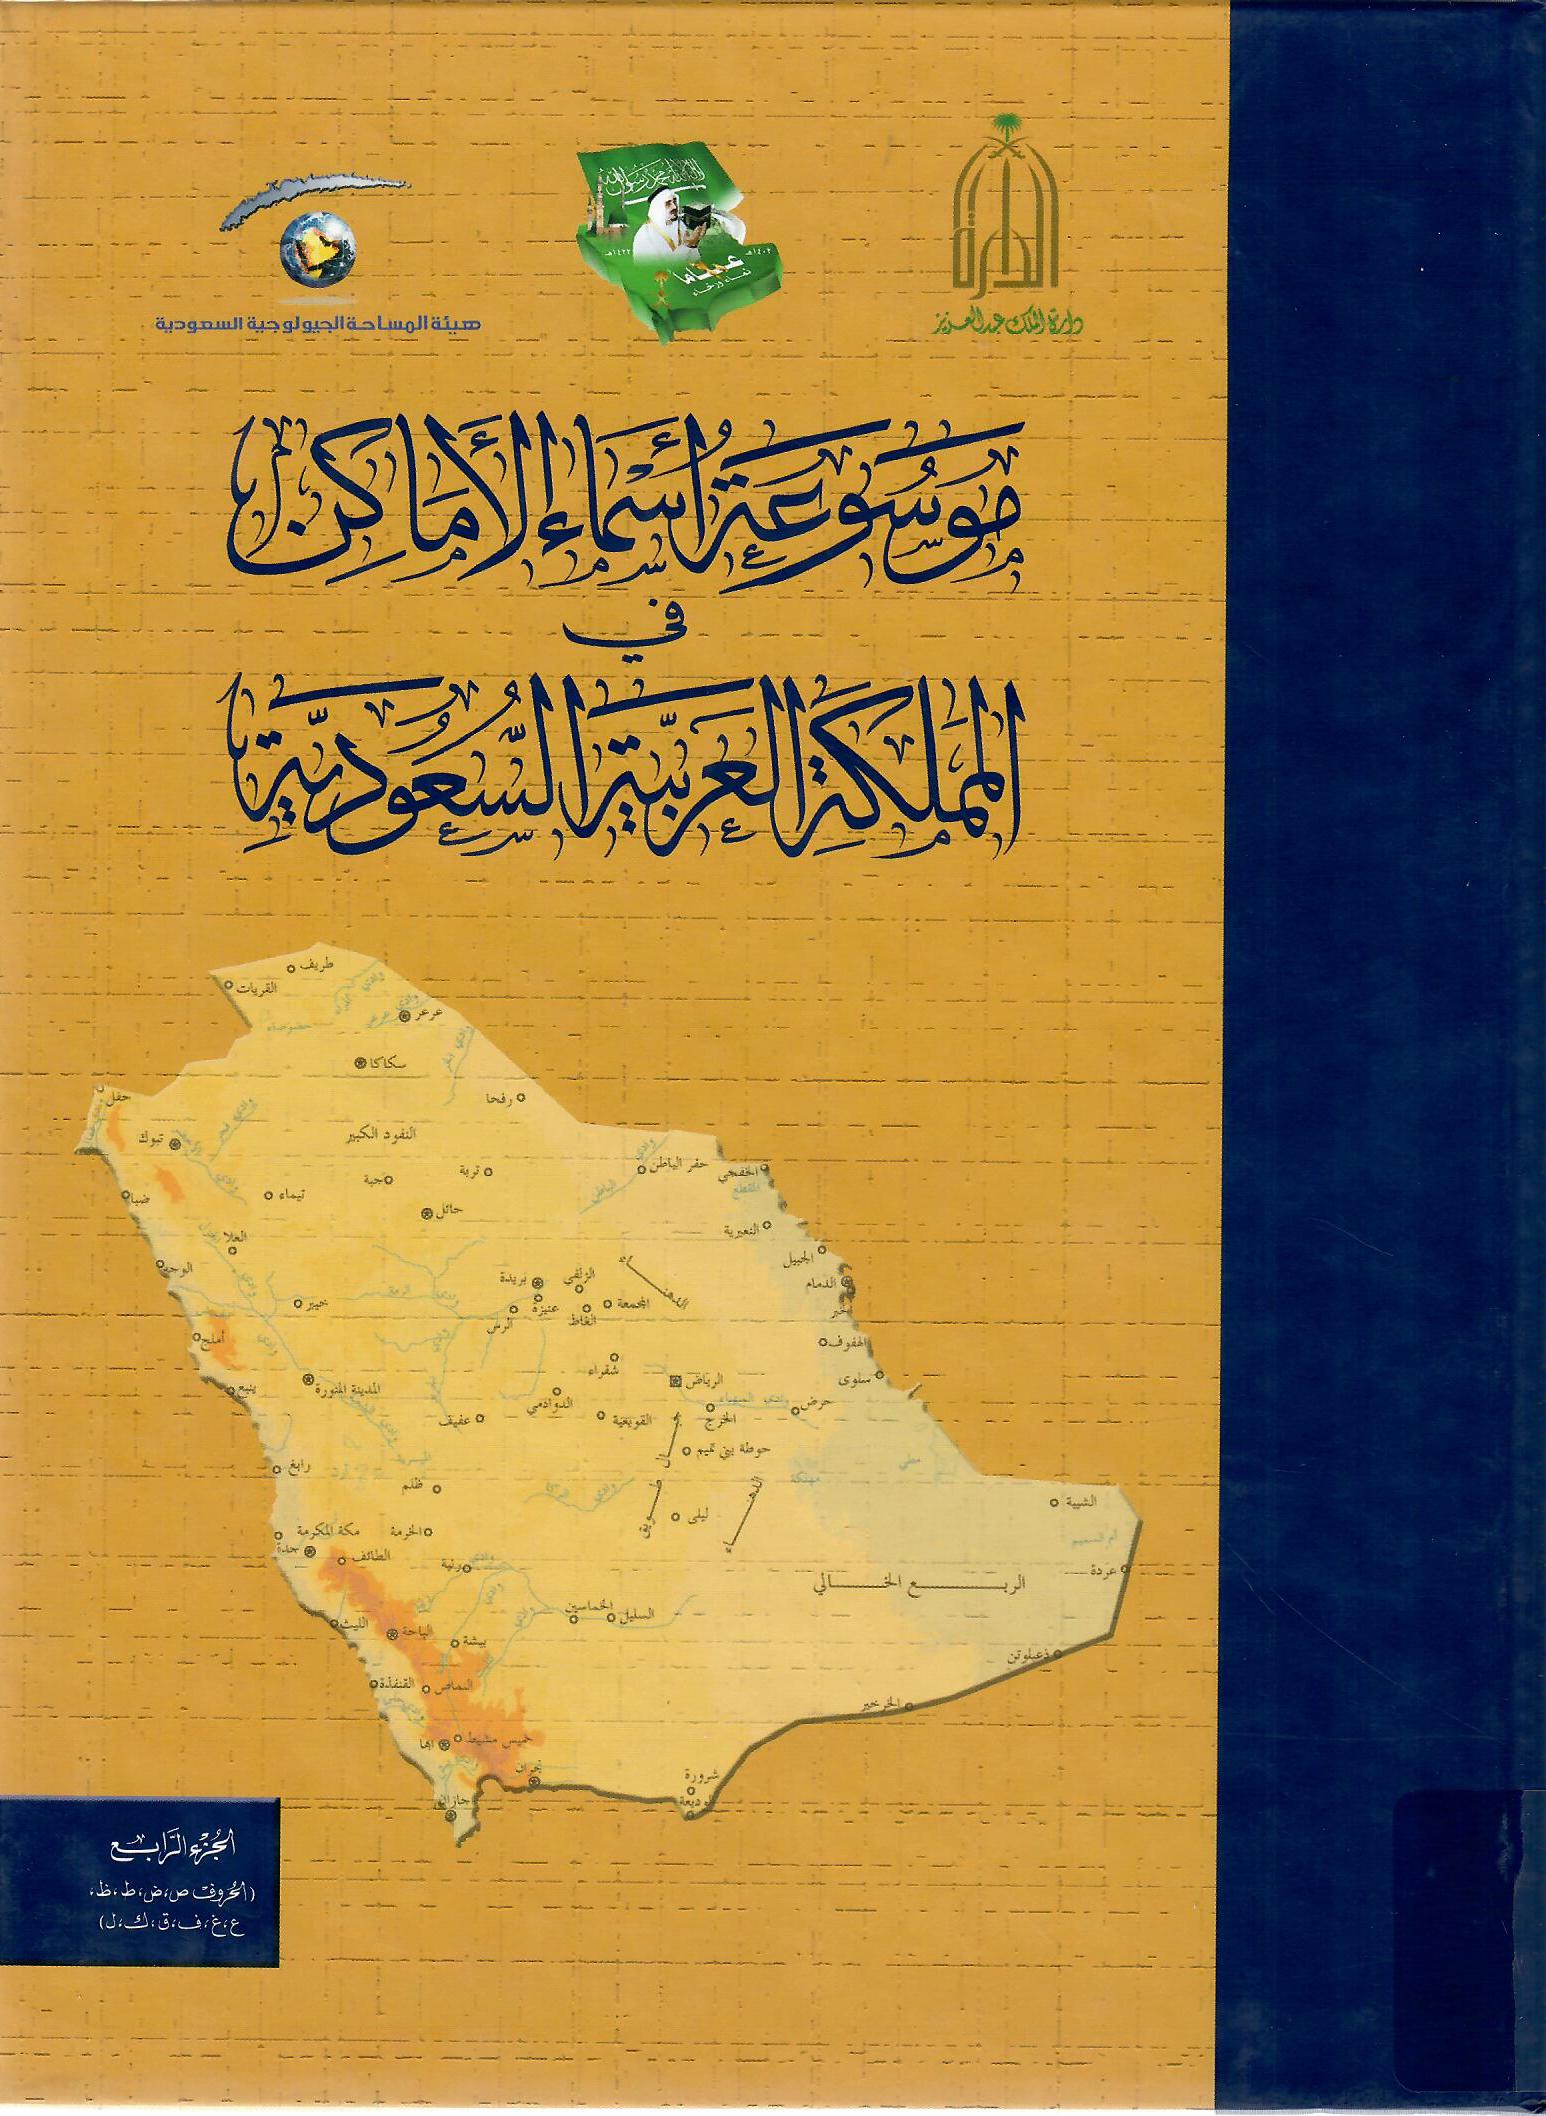 موسوعة أسماء الأماكن في المملكة العربية السعودية الجزء الرابع